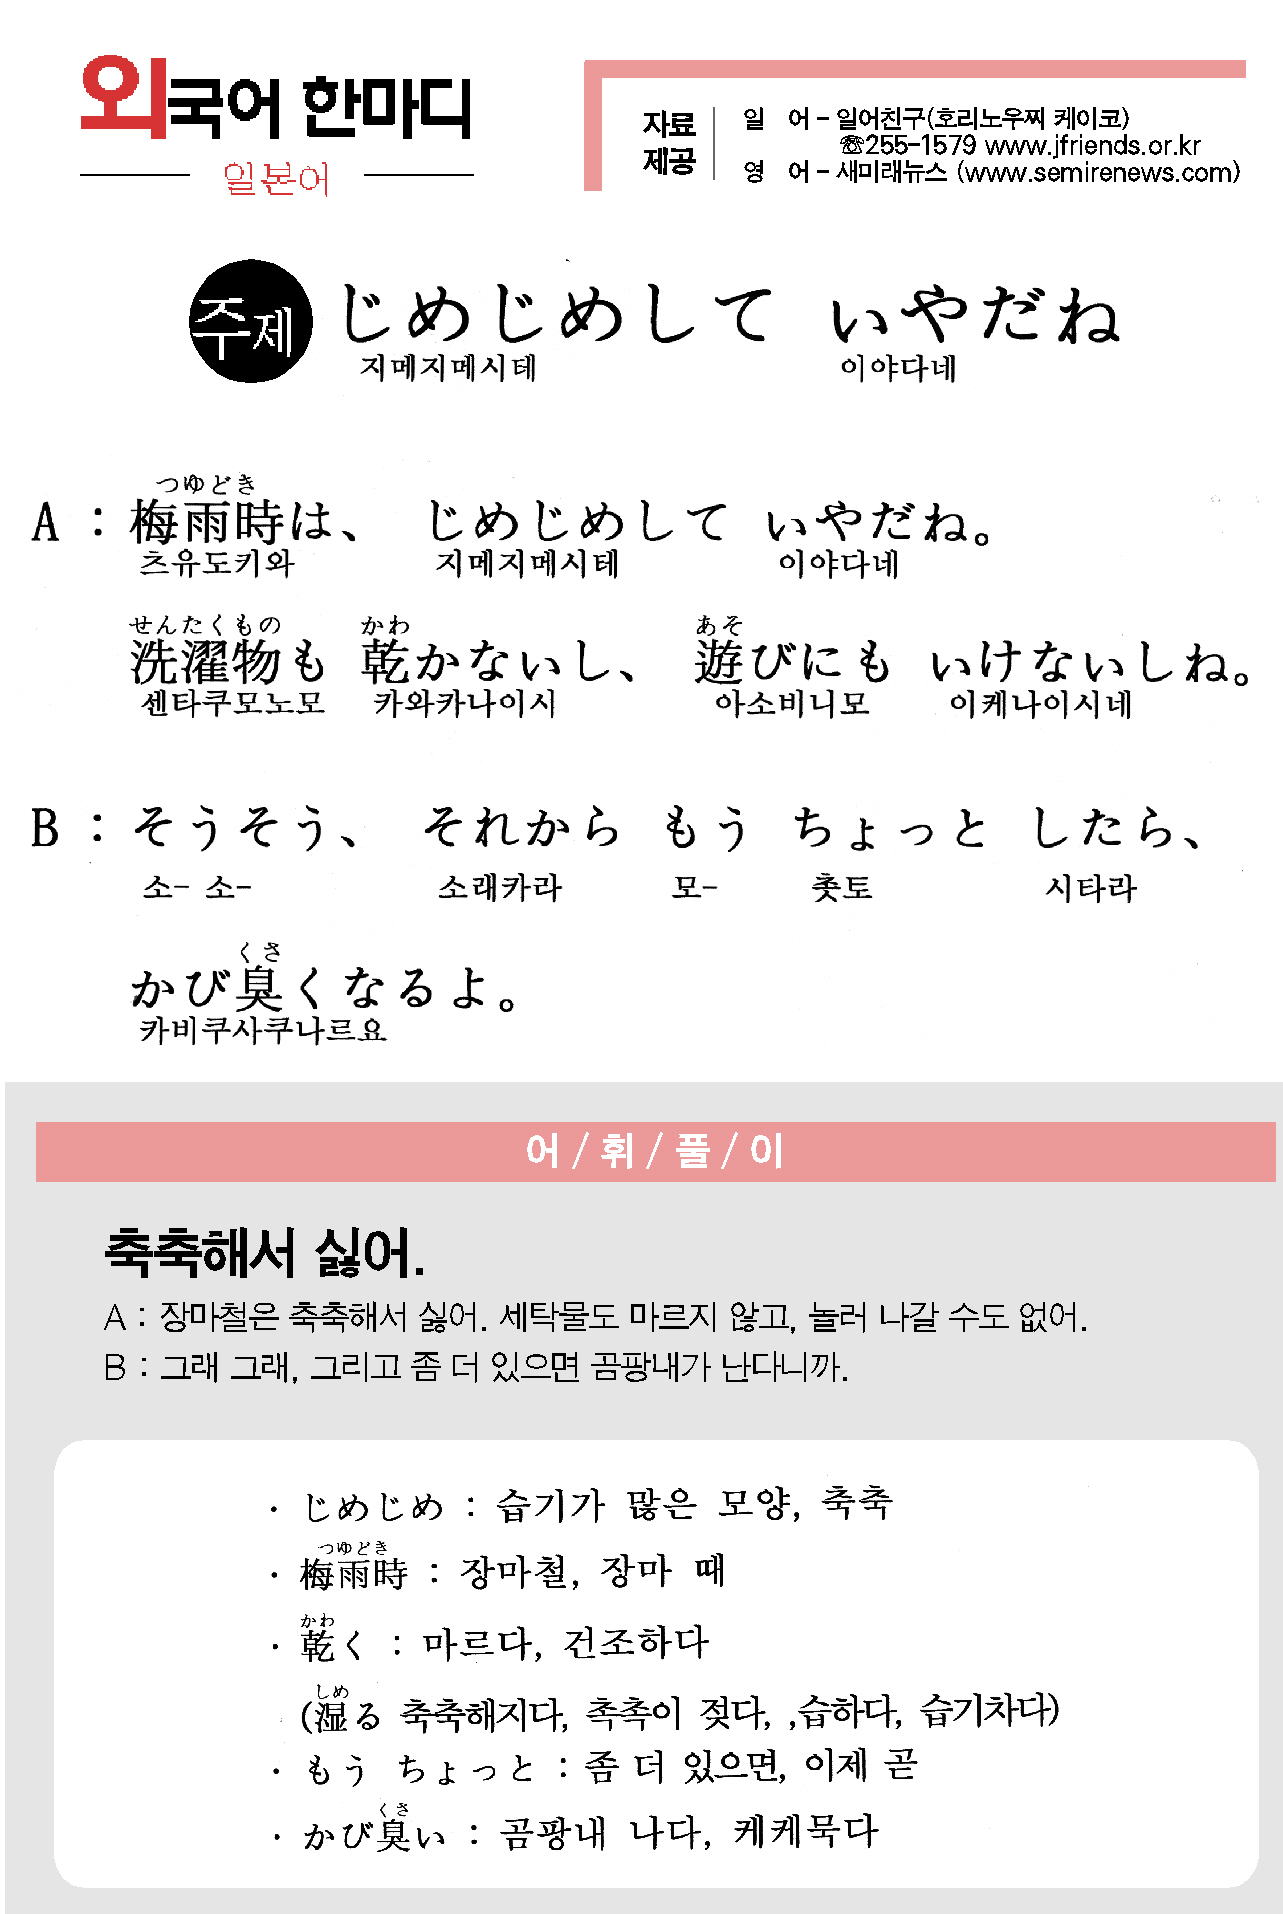 2013-07-17 じめじめして いやだね(축축해서 싫어).jpg